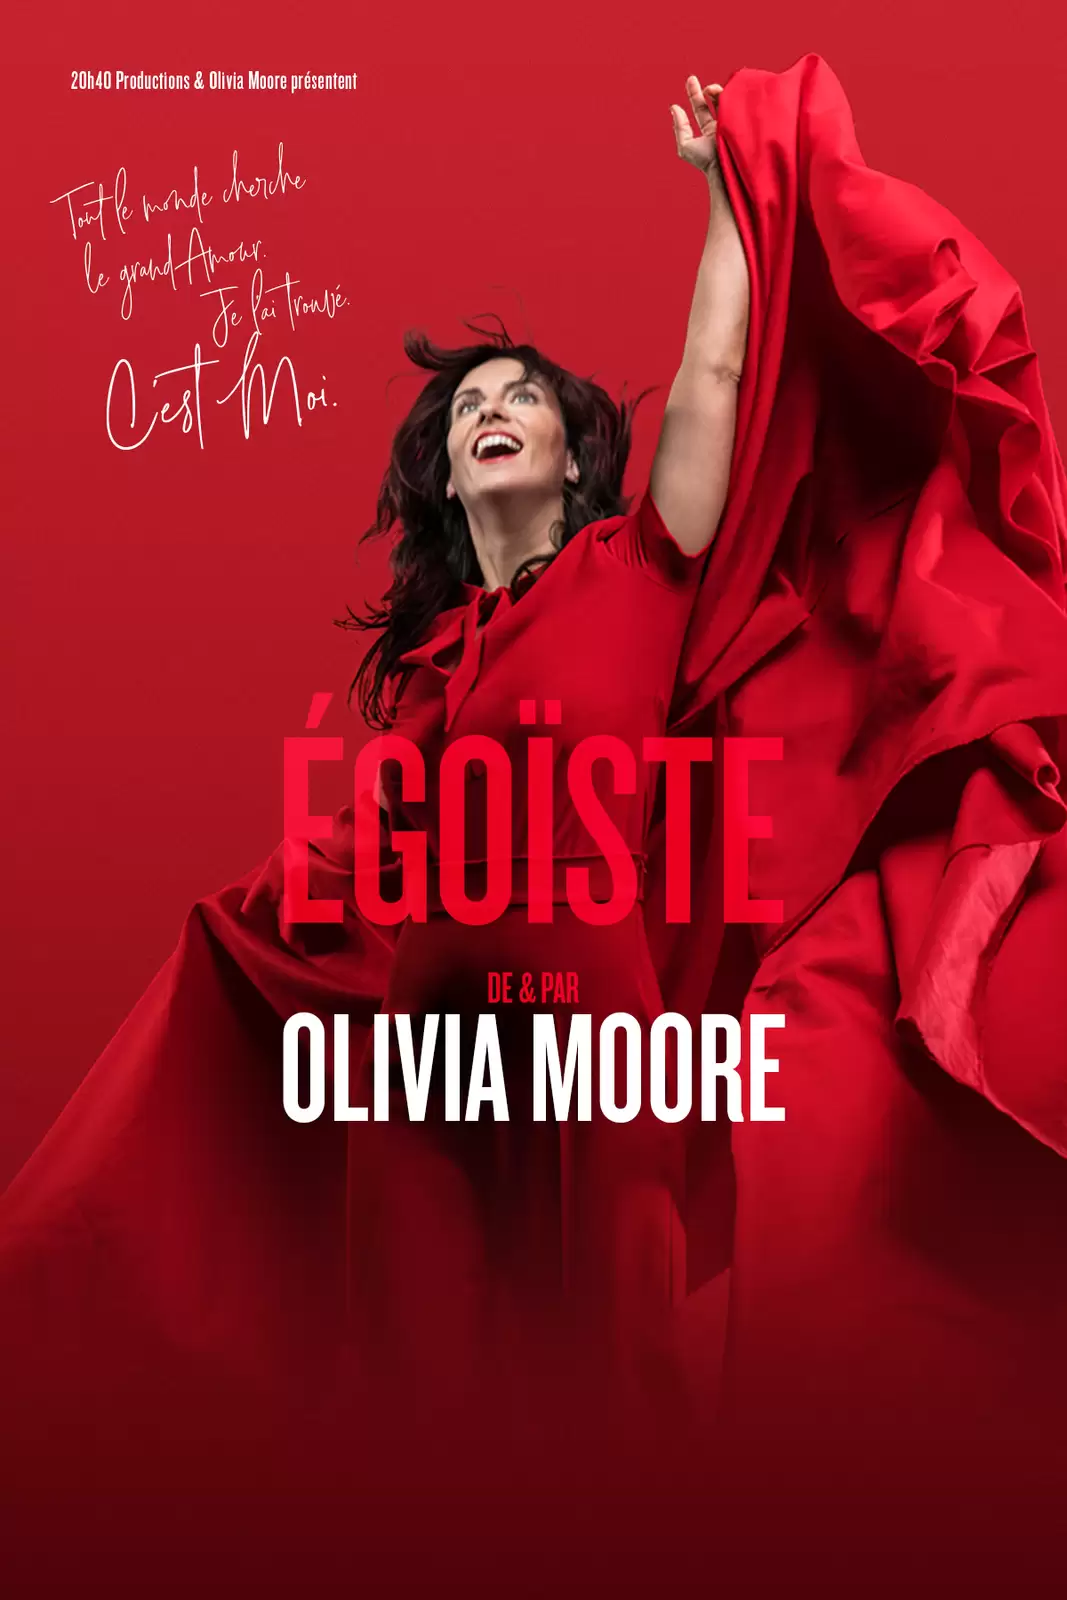 Olivia Moore : Egoiste